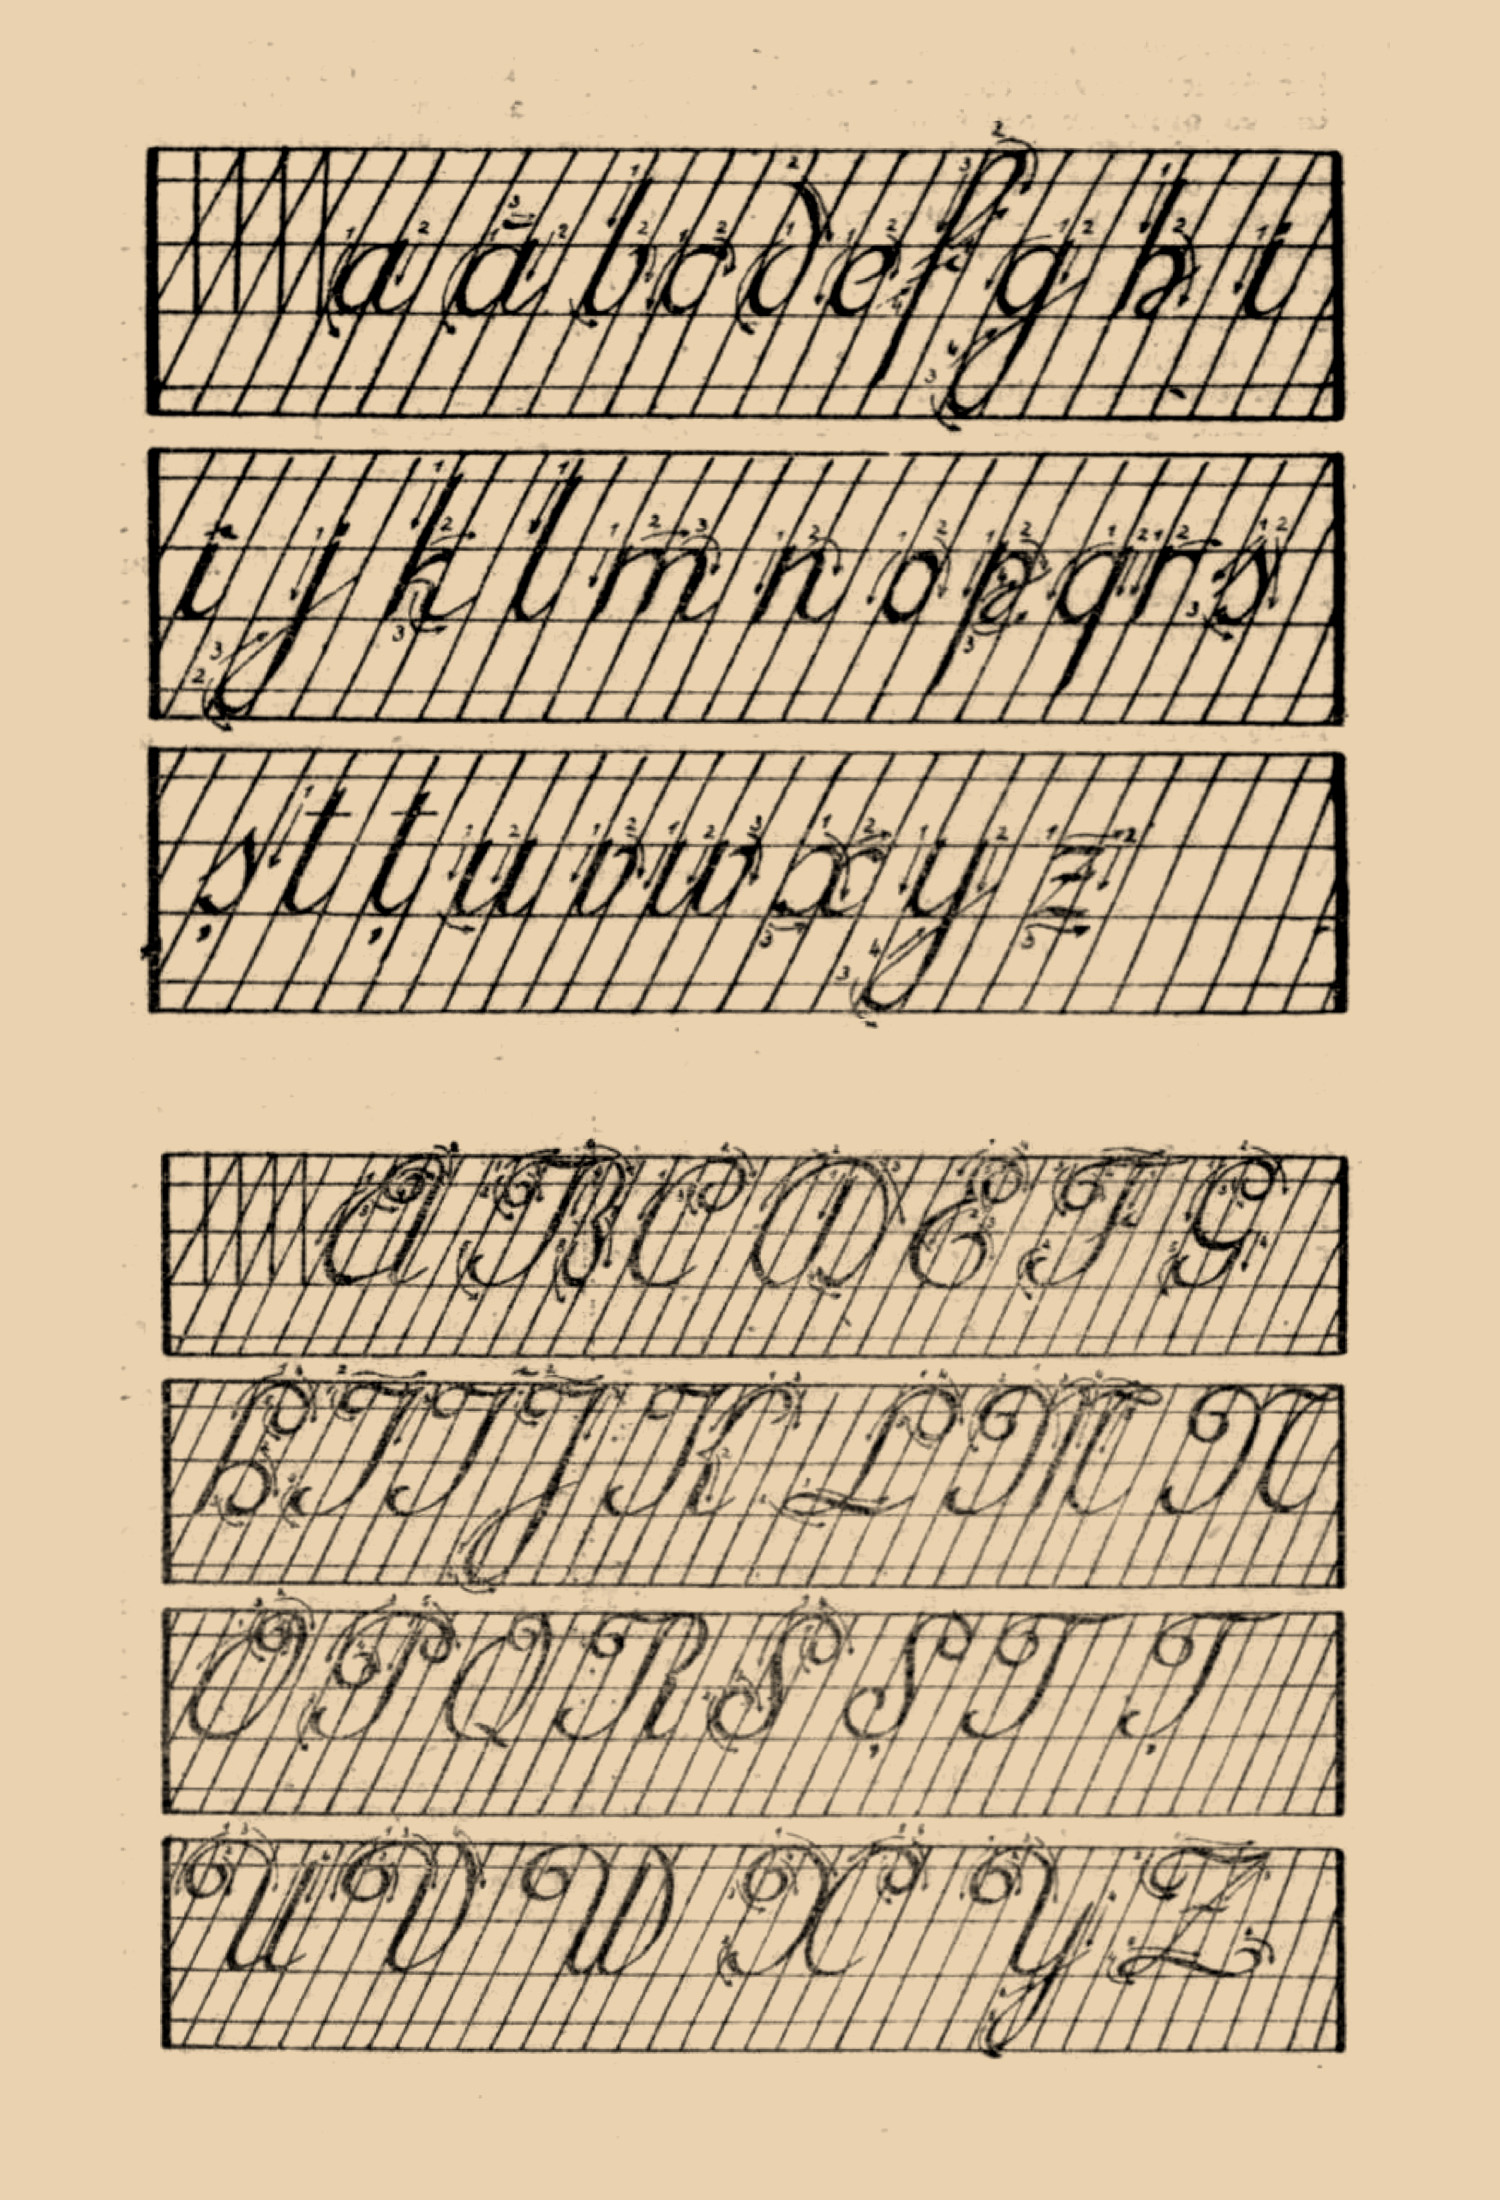 Exemplu de scriere batardă pe caiet cu liniatură oblică